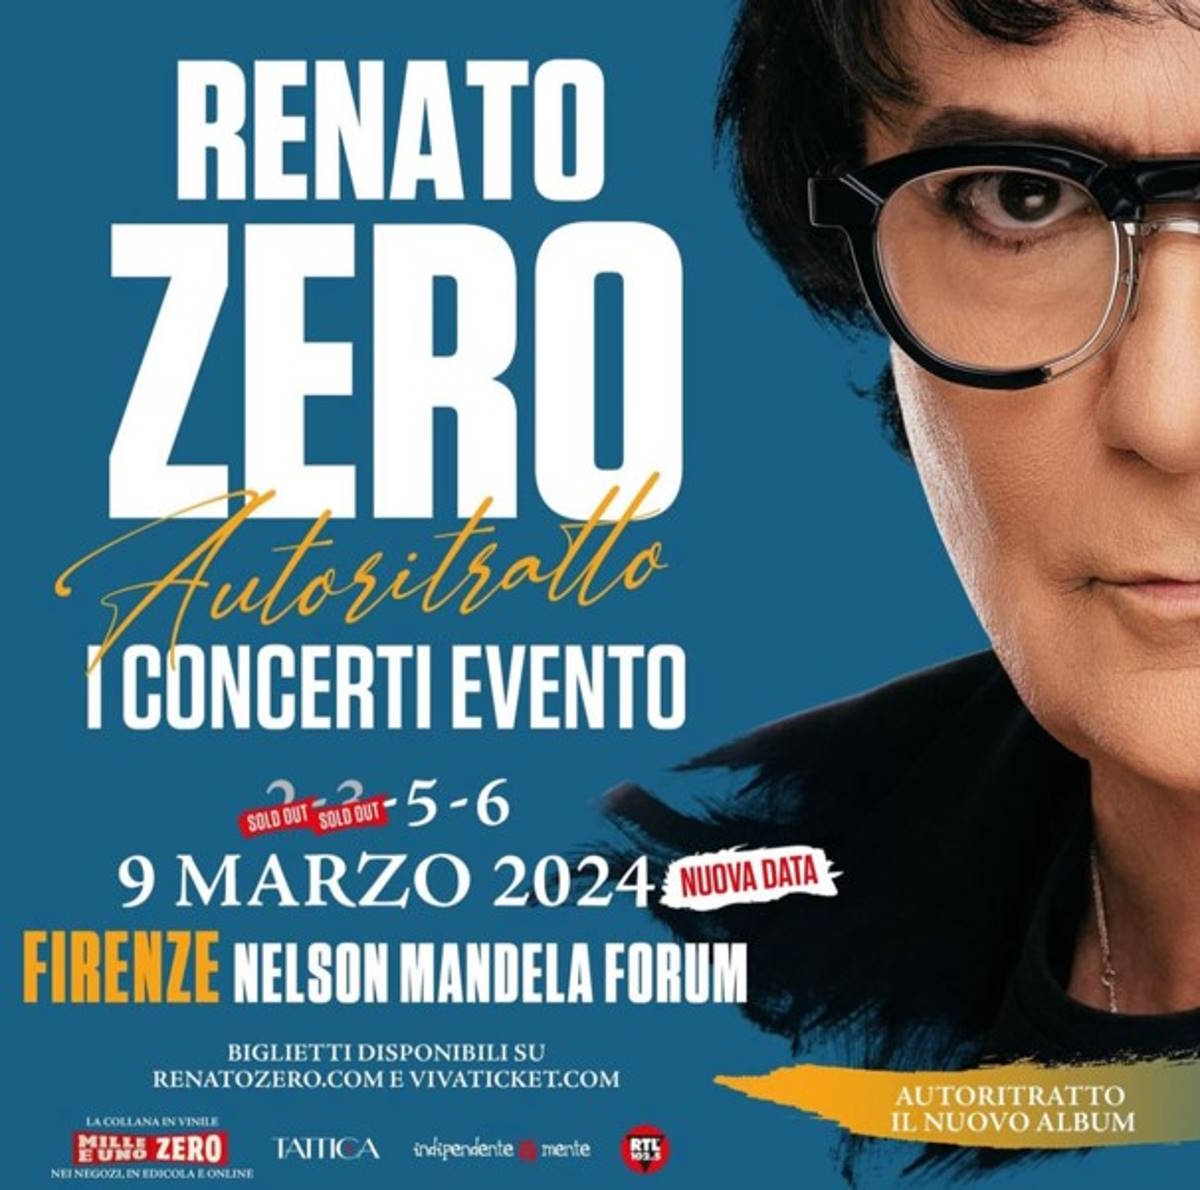 Renato Zero - Autoritratto - I Concerti Evento: tre sold out e una nuova data (la quinta) a Firenze, il 9 marzo